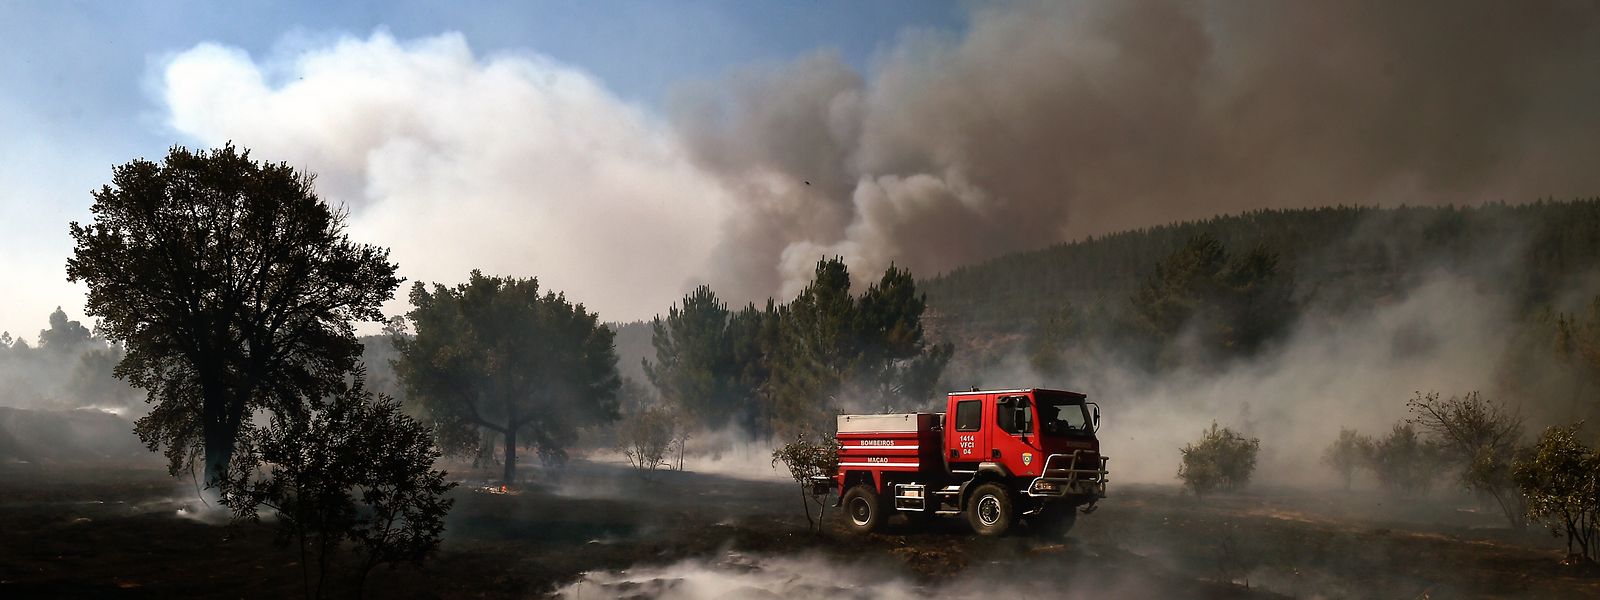 Bombeiros durante o combate a um incêndio em Castelo, Mação, 26 de julho de 2017. Estão envolvidos no combate ao incêndio 1126 bombeiros, 358 viaturas e 10 meios aéreos. NUNO ANDRÉ FERREIRA/LUSA